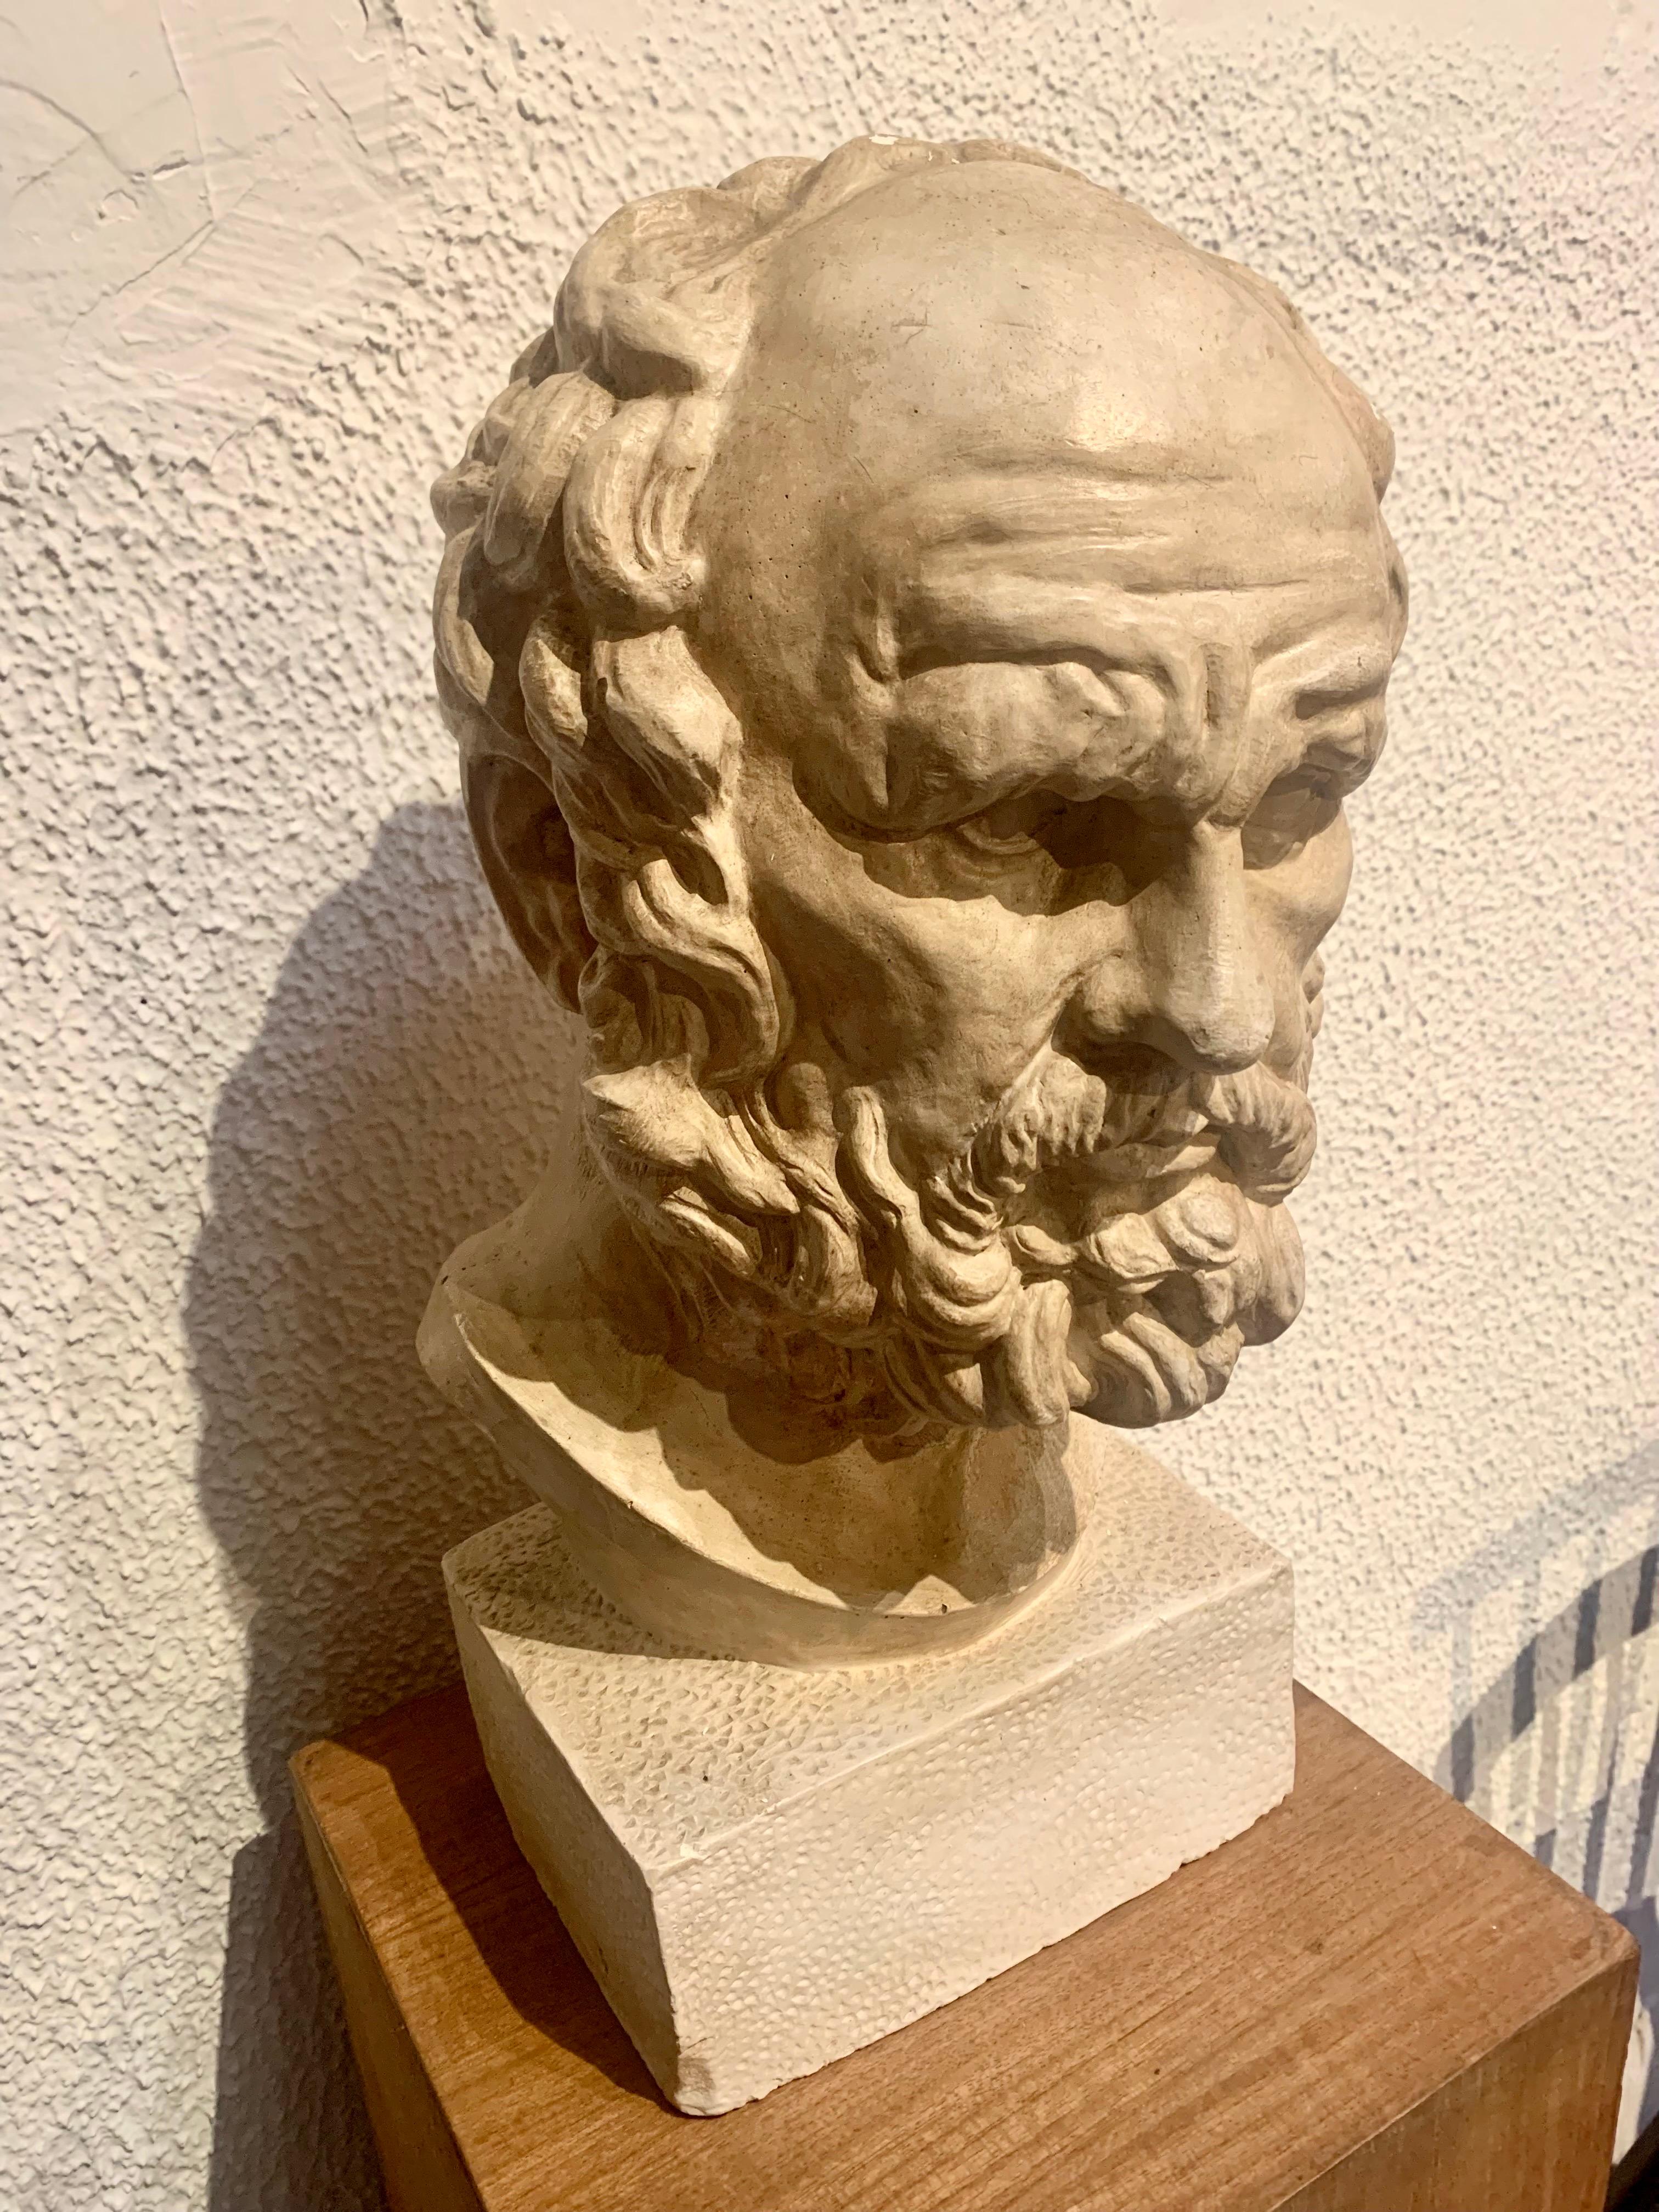 Buste d'académie en plâtre représentant un philosophe grec, peut-être PLATON. Le buste présente une grande qualité d'exécution et est légèrement patiné.